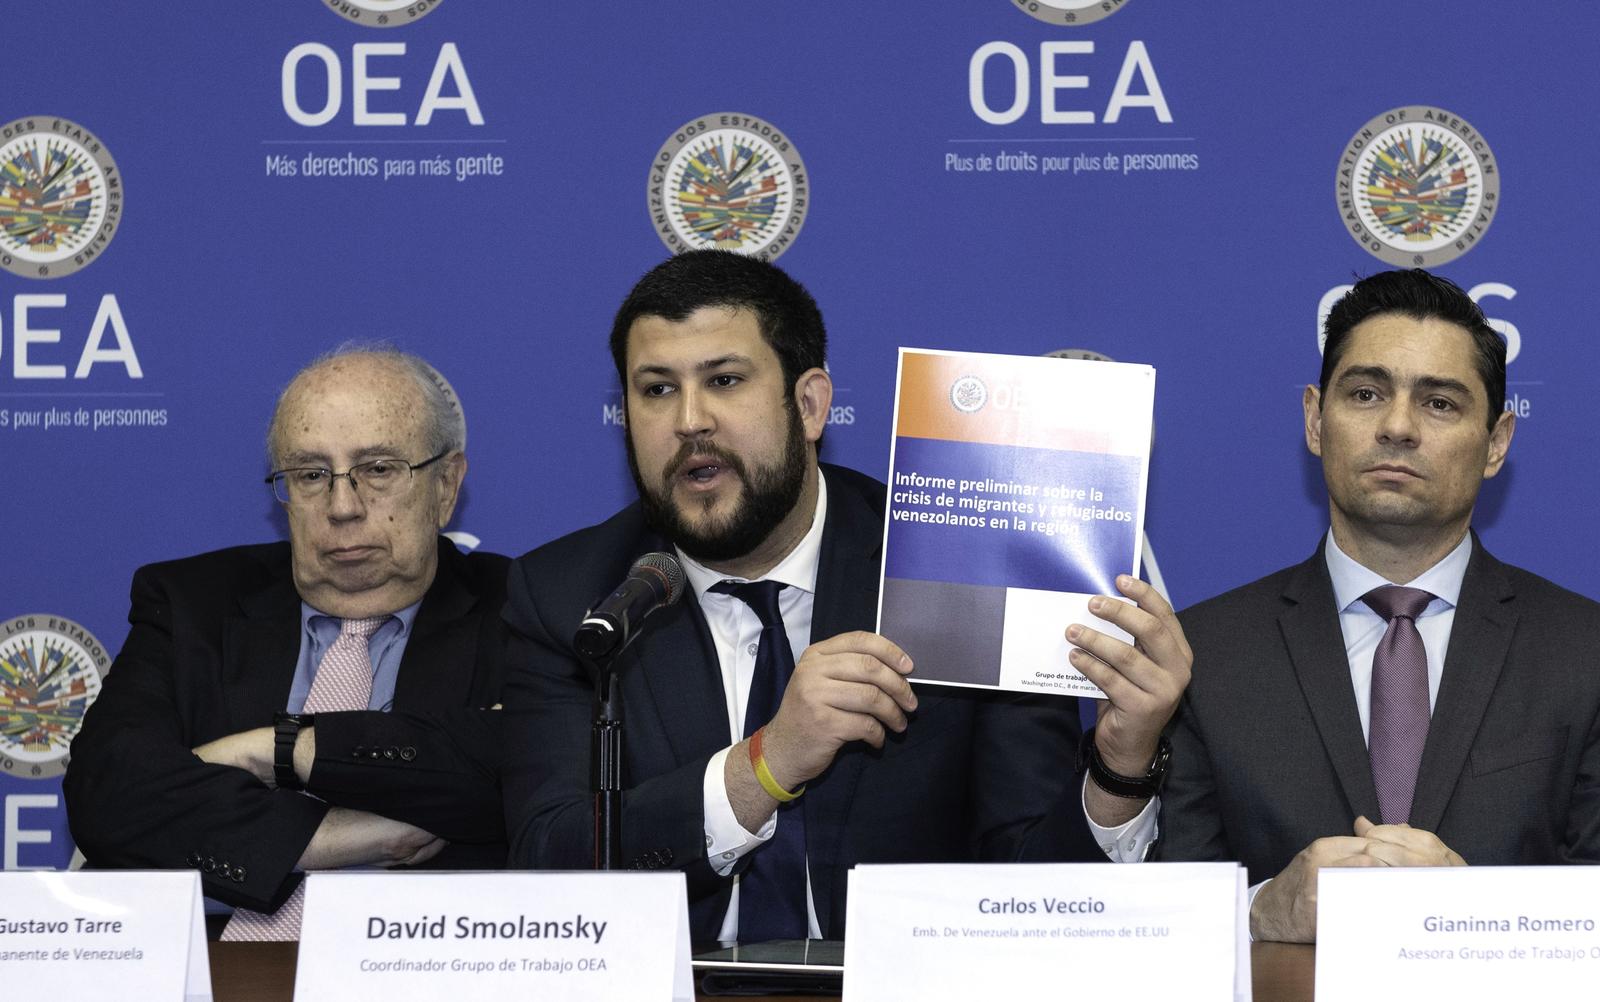 Presenta la OEA un informe detallado sobre la situación social y política en Venezuela, donde más de tres millones han salido.